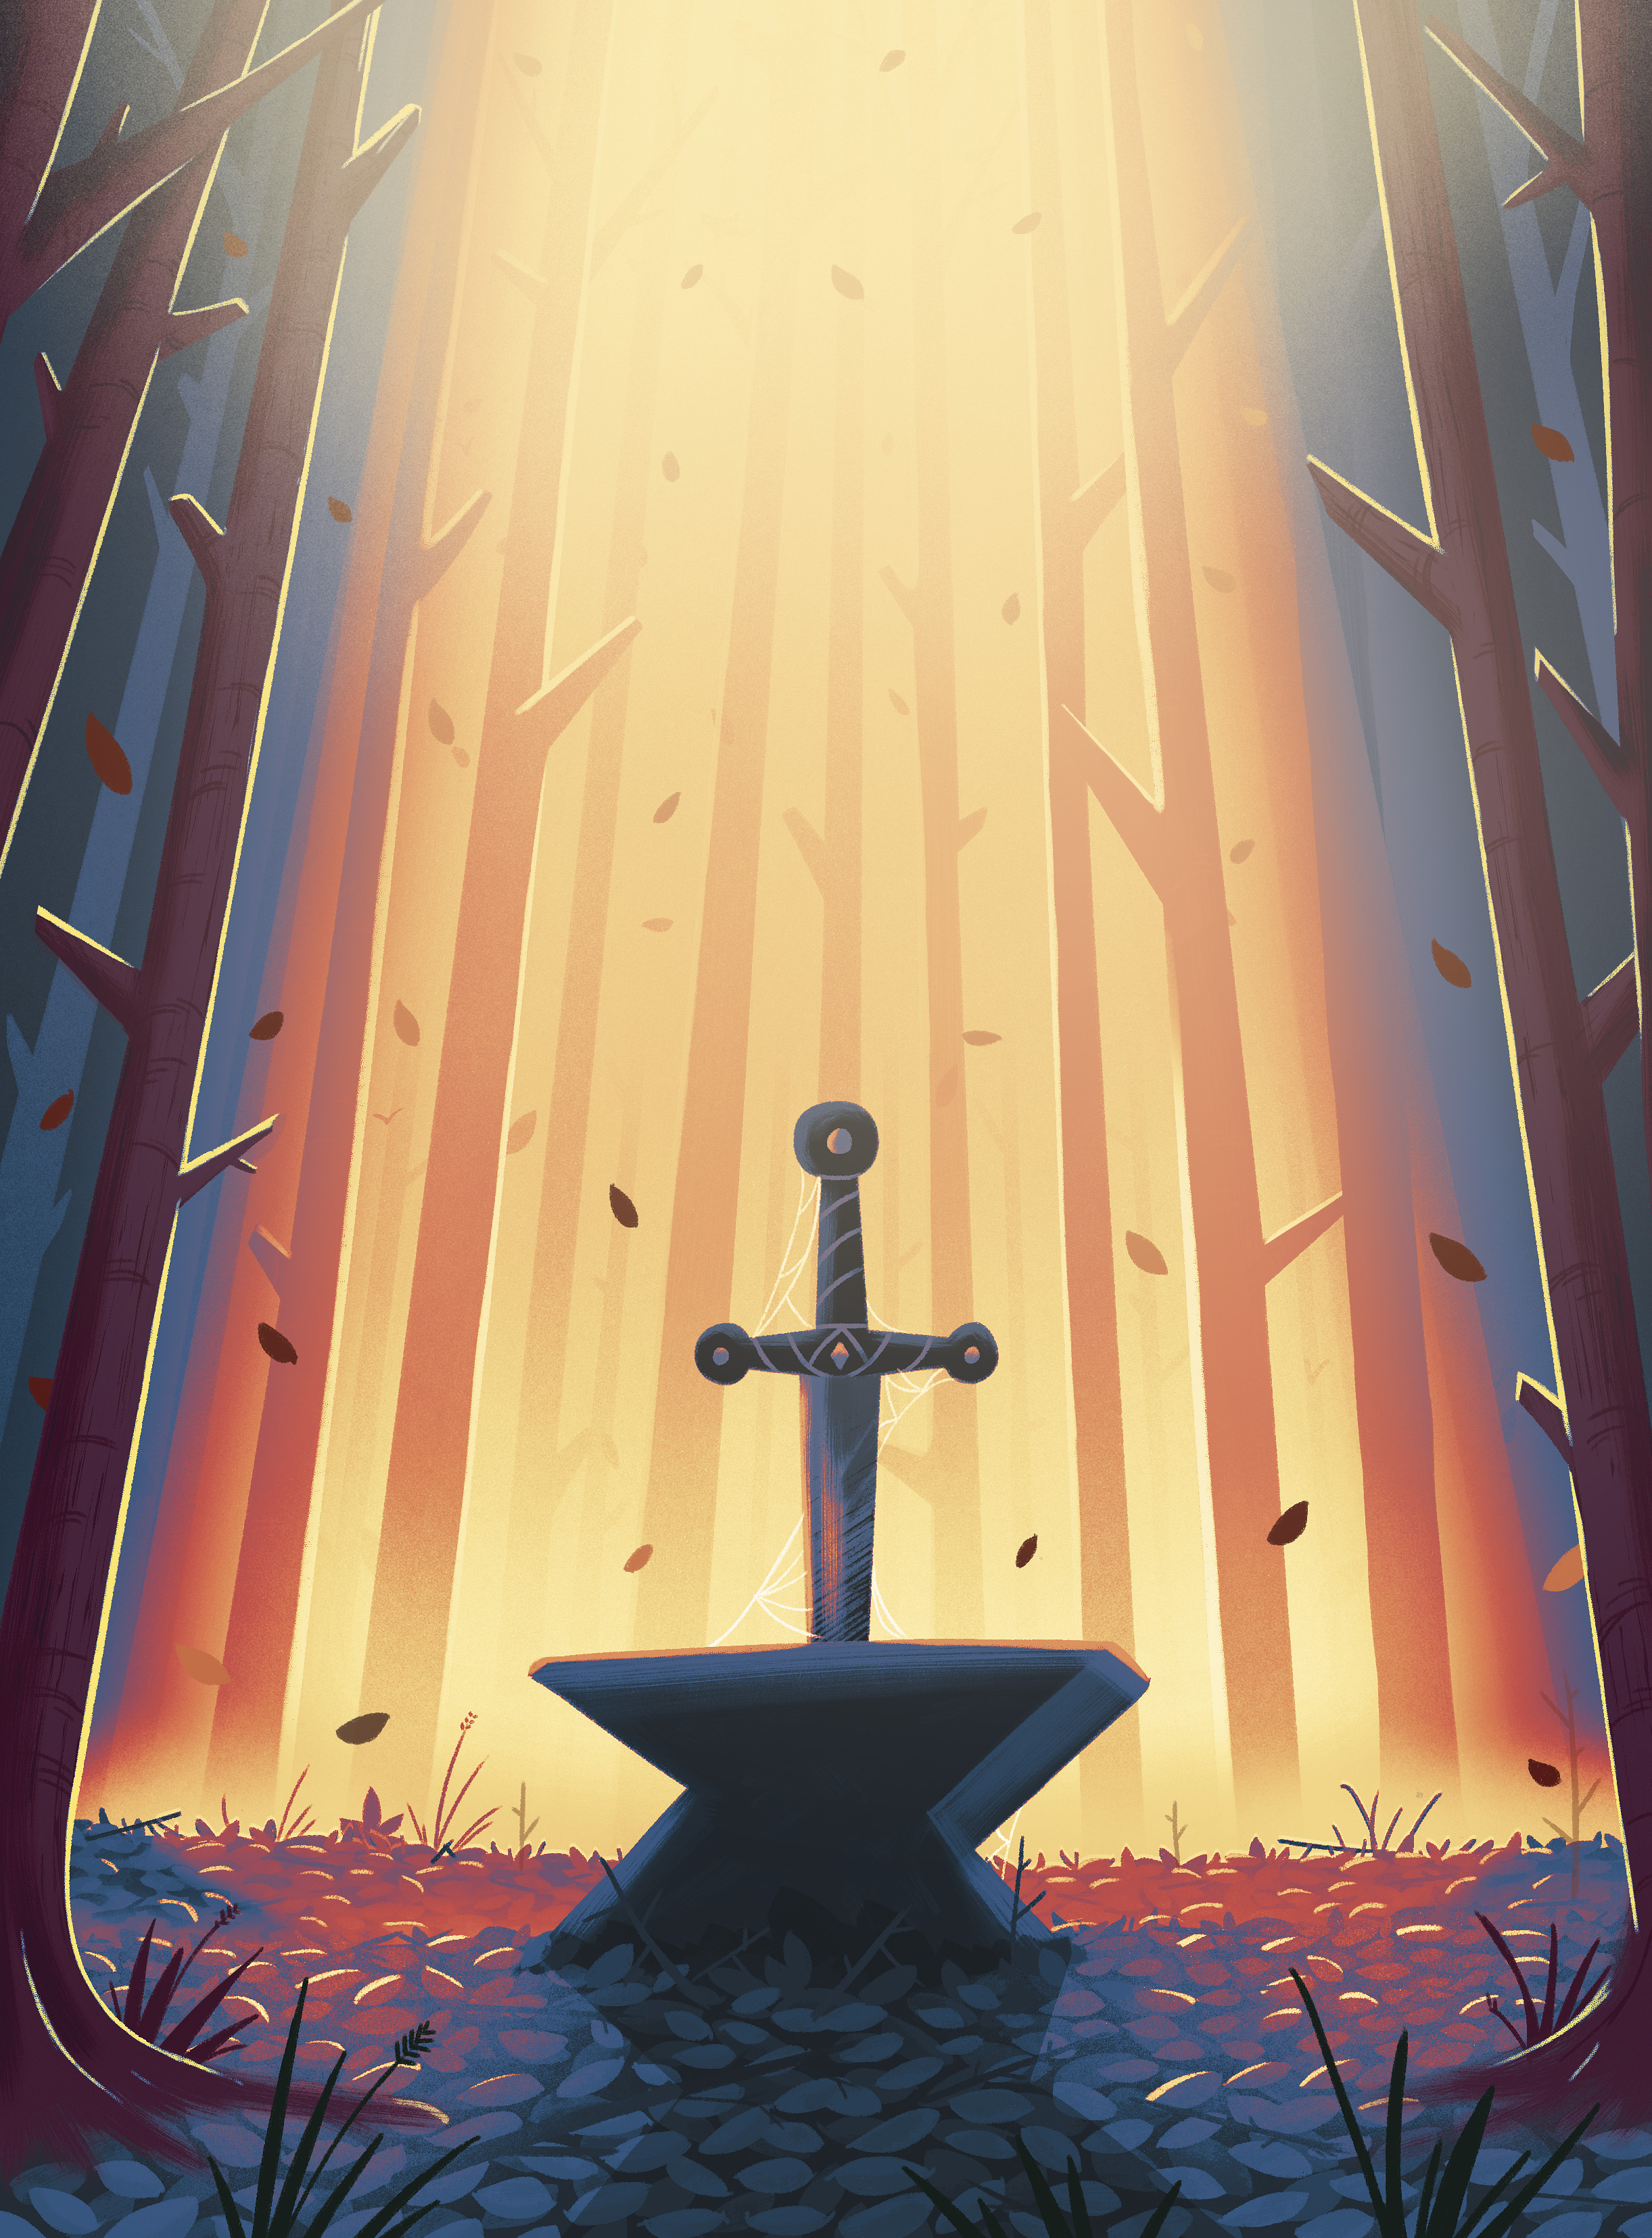 sword in the woods